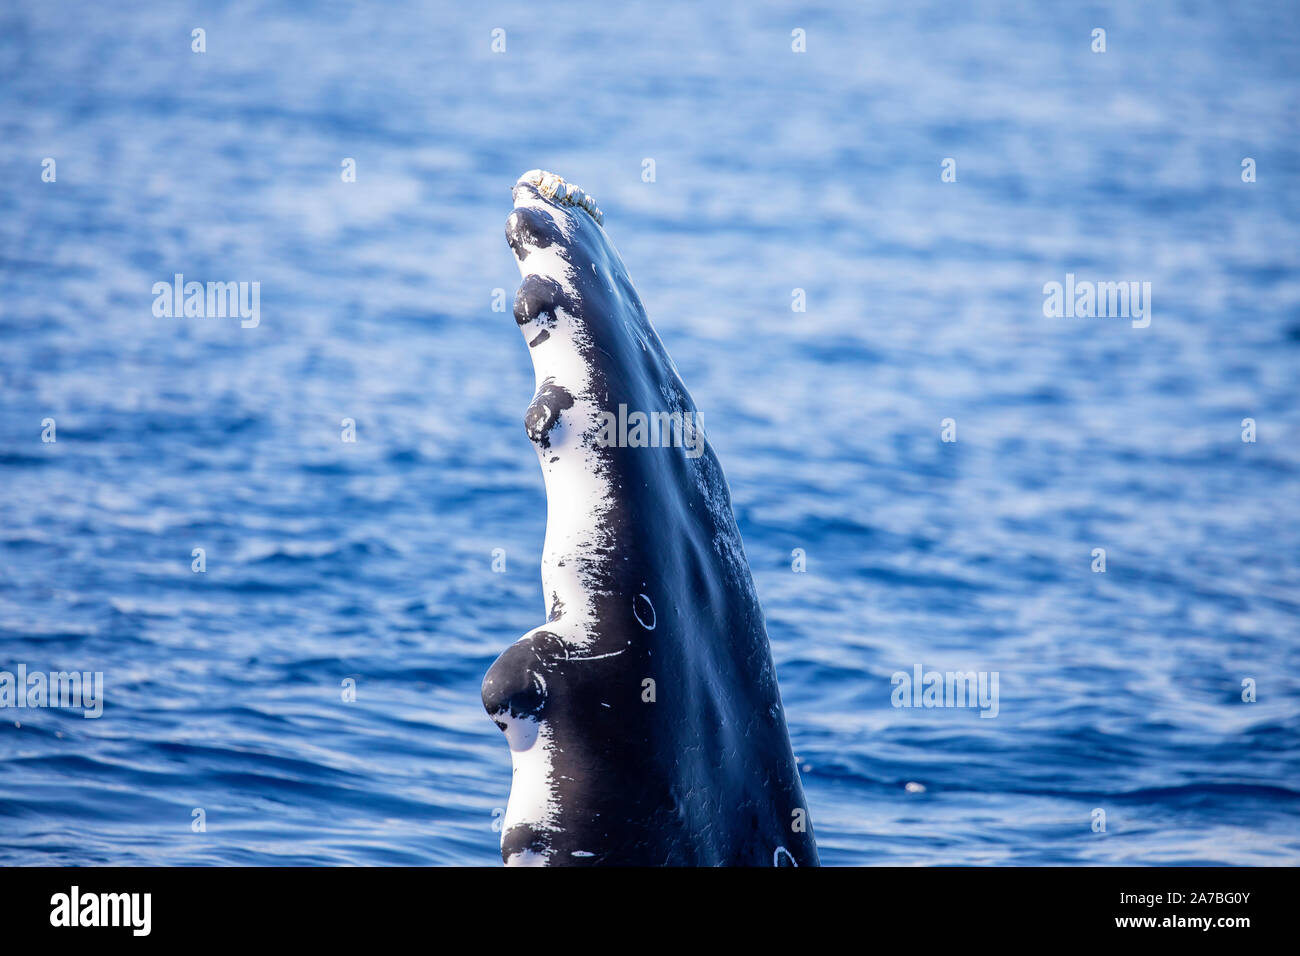 Un regard étroit à l'extrémité de la nageoire pectorale d'une baleine à bosse. Ils sont bien connus pour leurs longues nageoires pectorales "", qui peut aller jusqu'à 15 pieds (4,6 m Banque D'Images